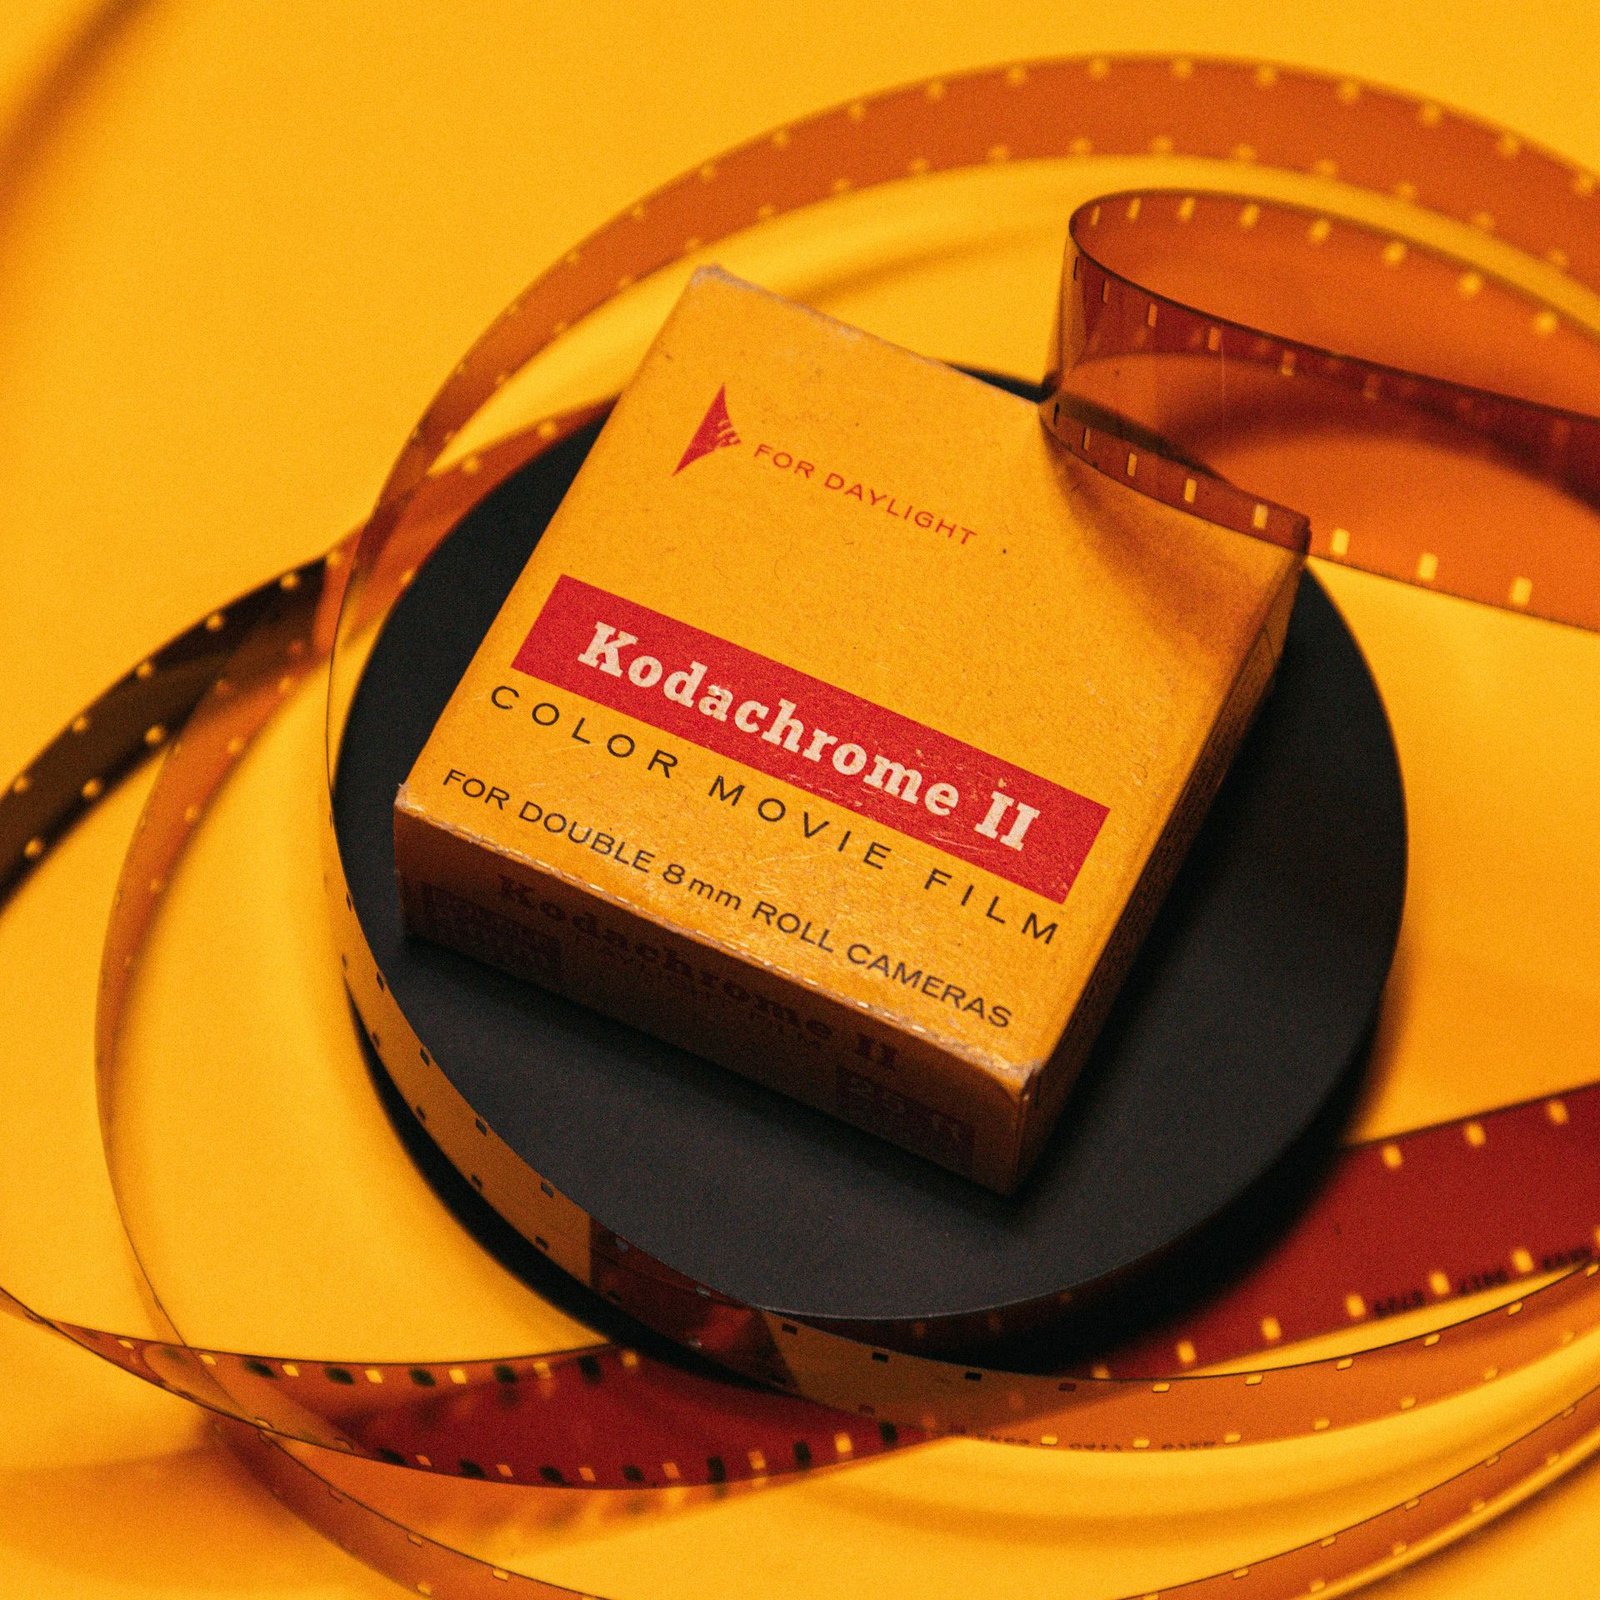 Verpackung von einem Film von dem ehemaligen Brand Leader Kodak